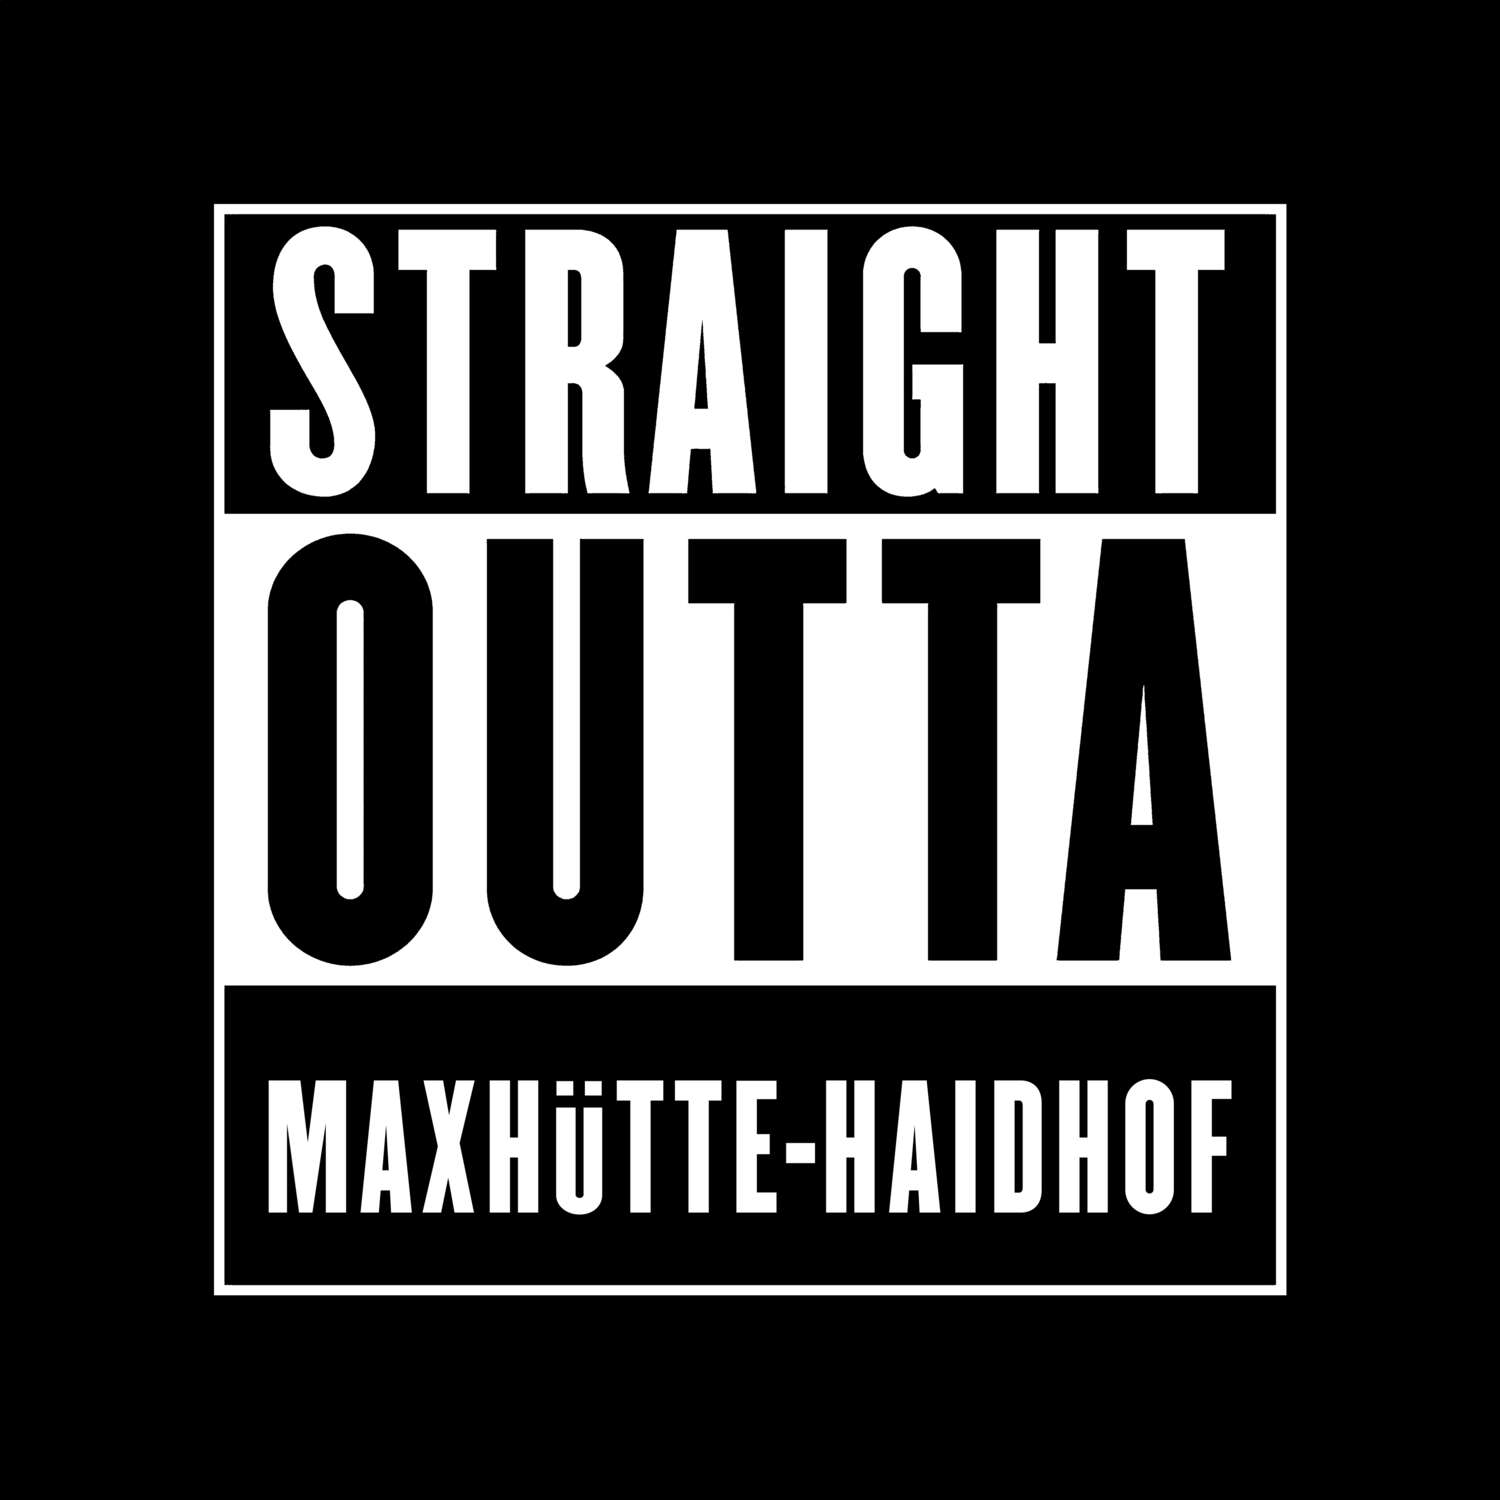 Maxhütte-Haidhof T-Shirt »Straight Outta«